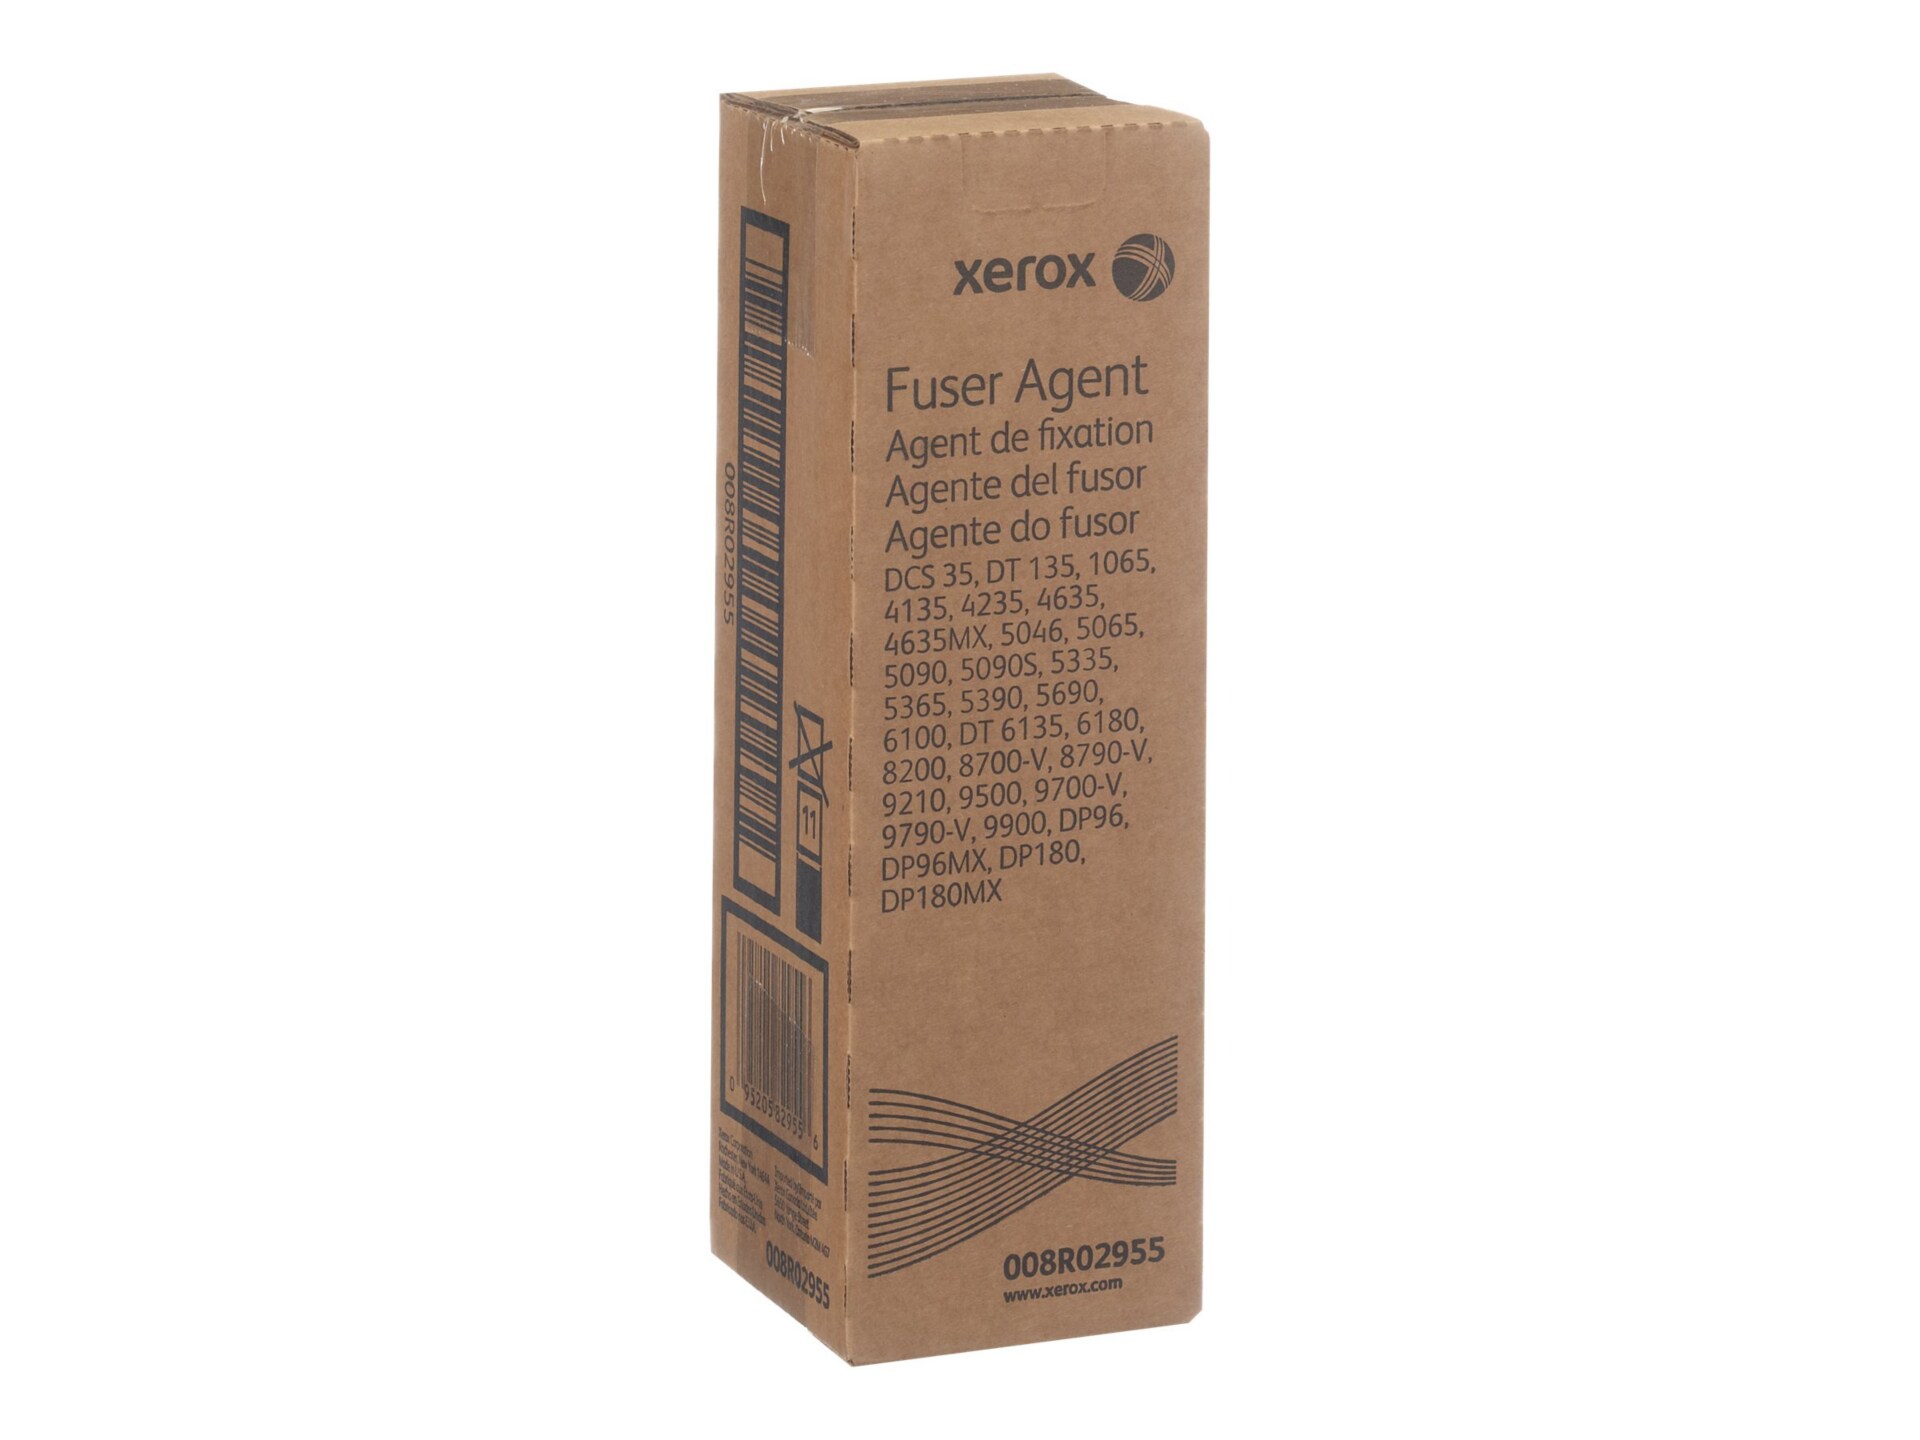 Xerox Fuser Agent - fuser oil